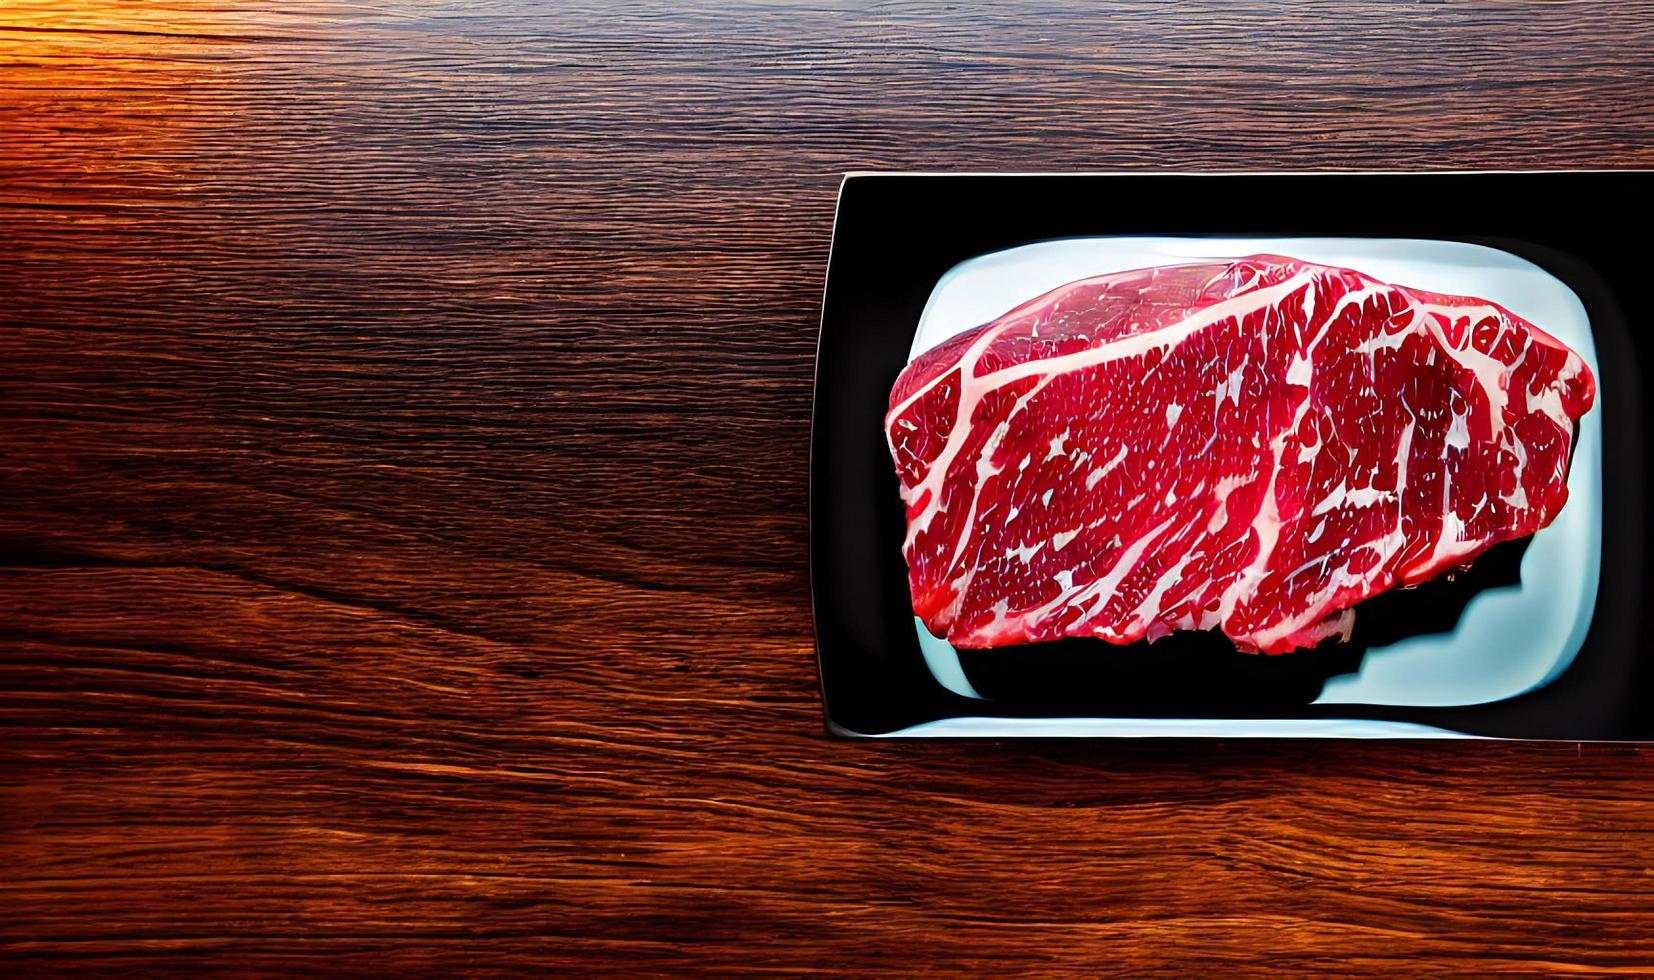 Steak. Gourmet frisches leckeres saftiges Steak. ausgewählten Schwerpunkten im Posterformat. foto